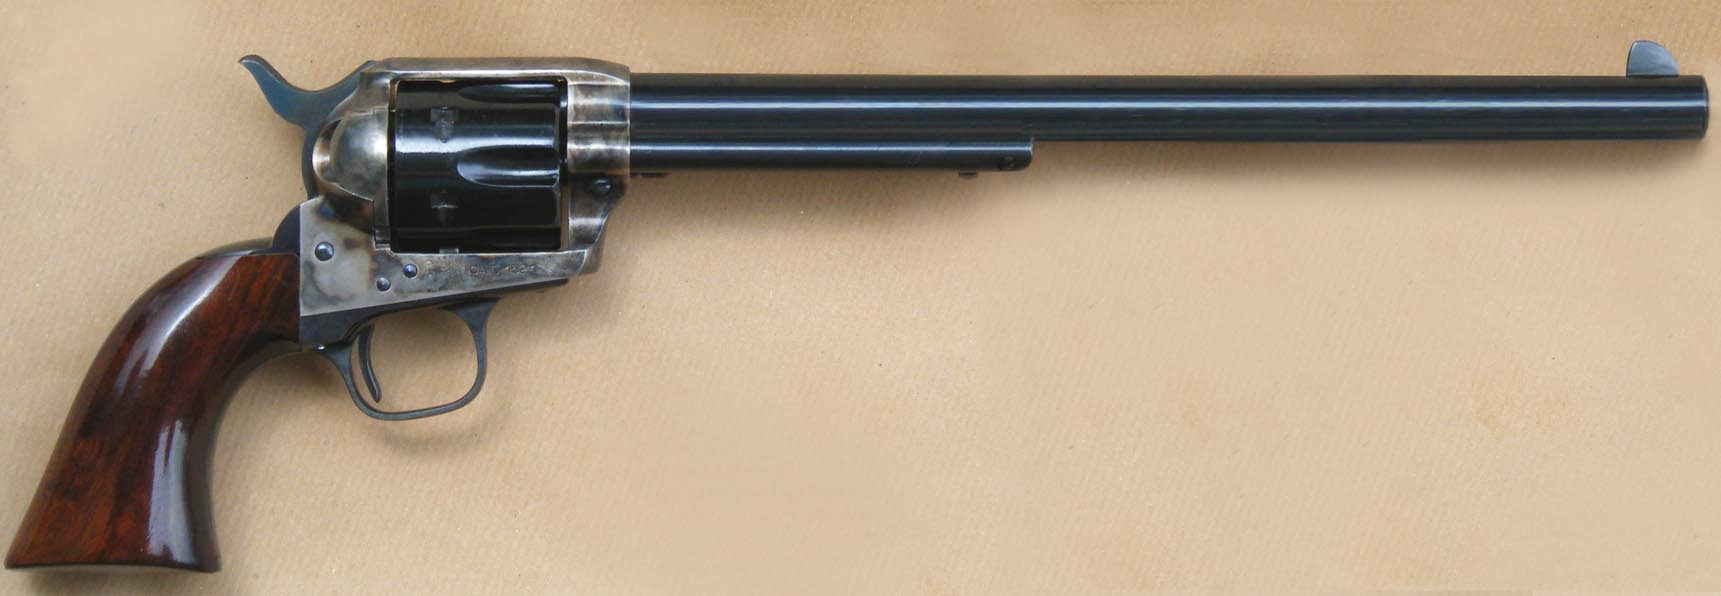 Colt SAA Buntline Special - Wyatt Earp's Gun